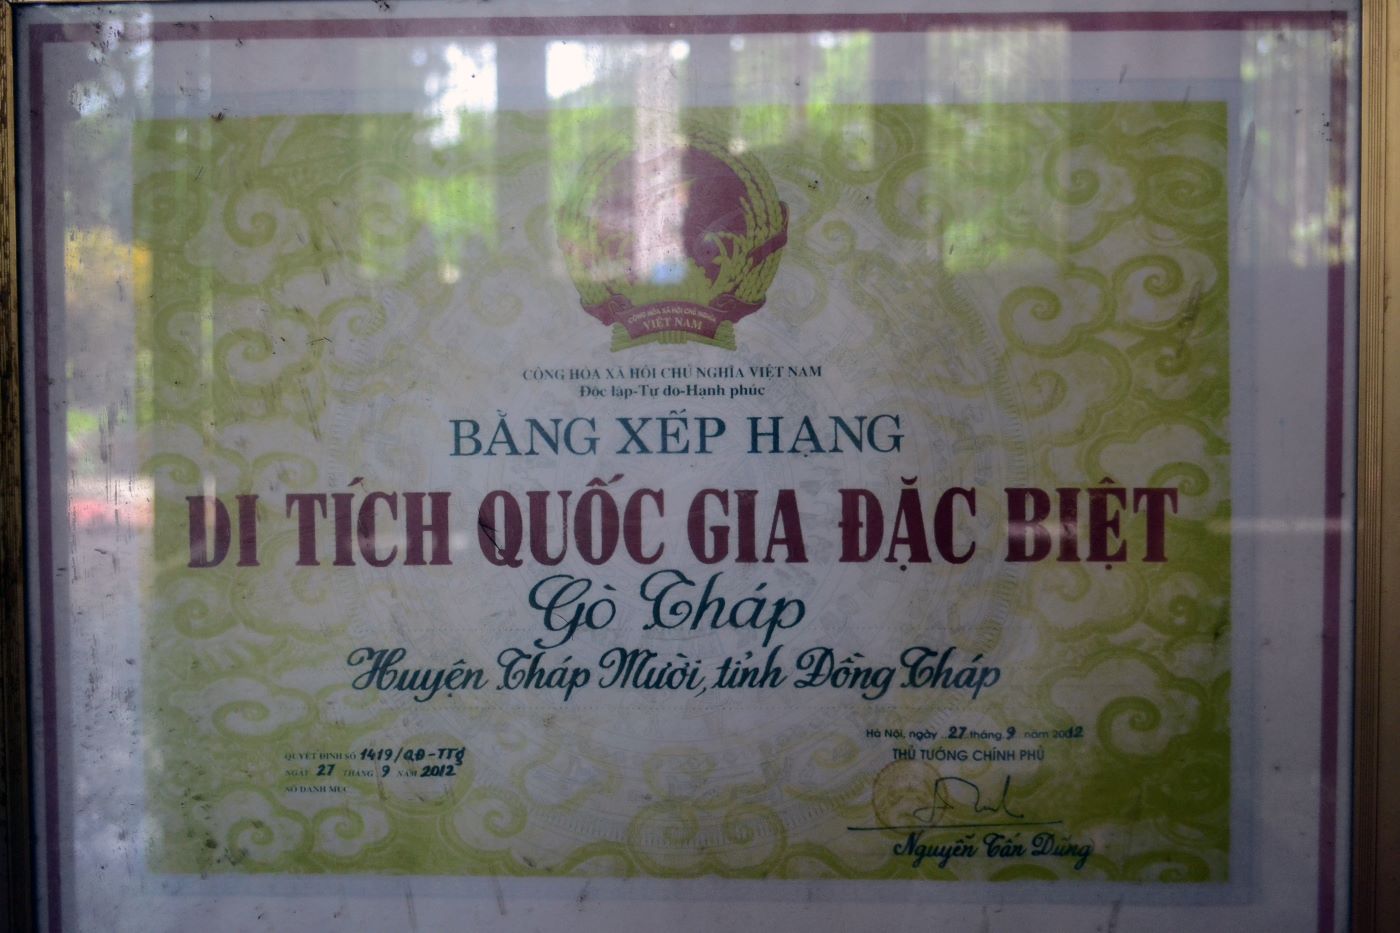 Bằng xếp hạng Di tích quốc gia đặc biệt Gò Tháp do Thủ tướng Chính phủ Nguyễn Tấn Dũng ký năm 2012. Ảnh: Thanh Mai